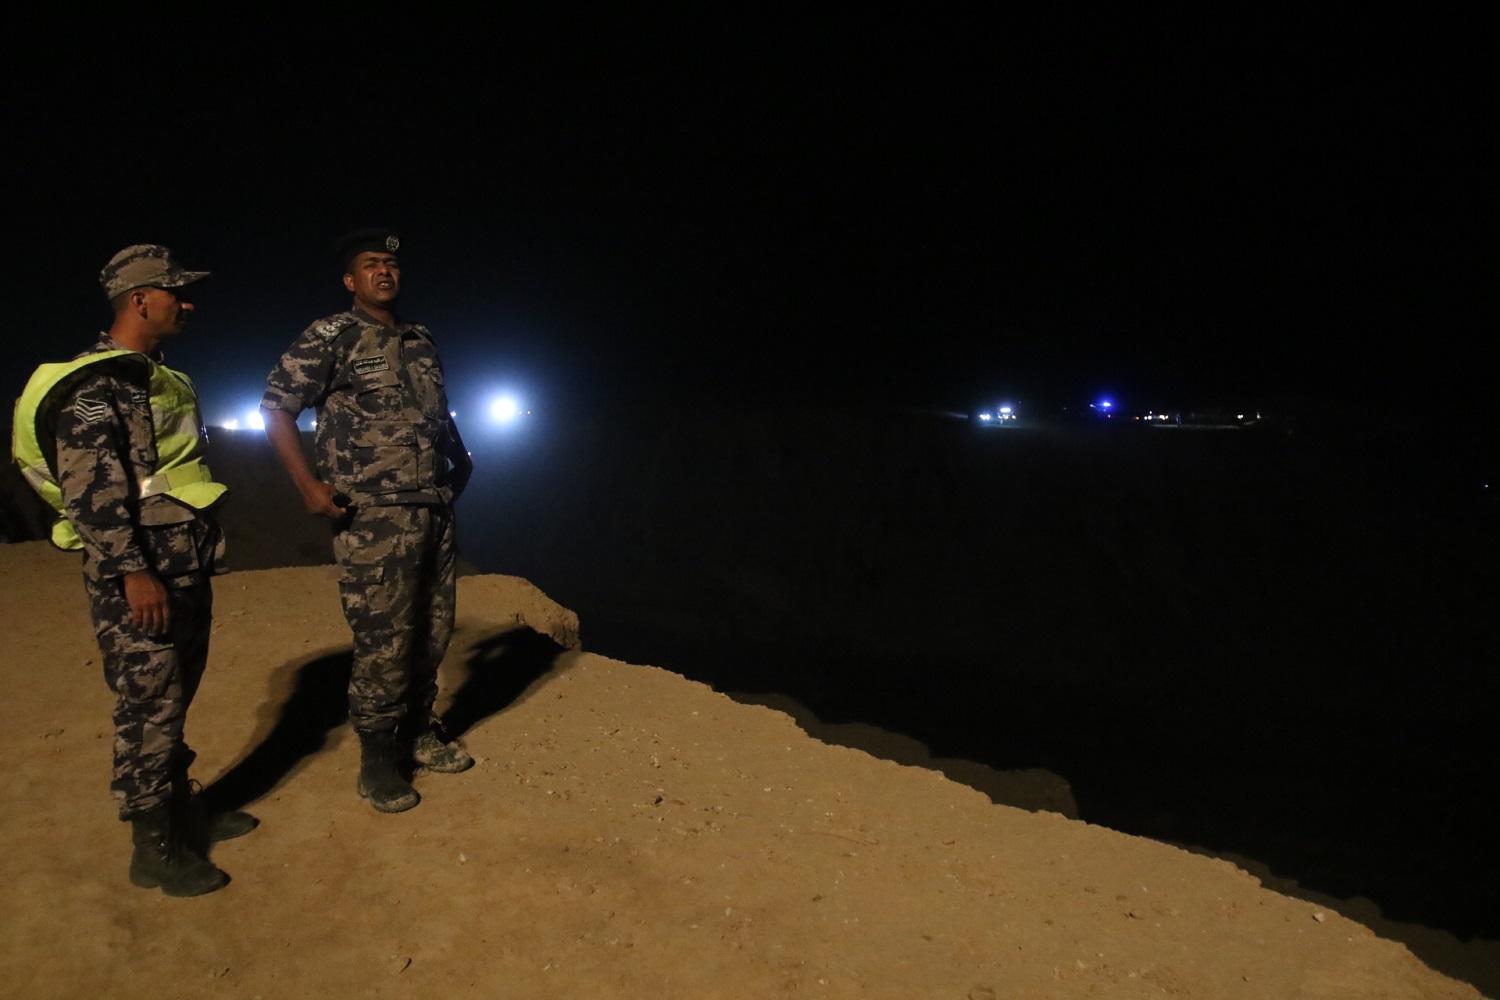 أفراد من الدفاع المدني بالقرب من موقع الحادثة في منطقة البحر الميت 25 أكتوبر. صلاح ملكاوي/ المملكة 